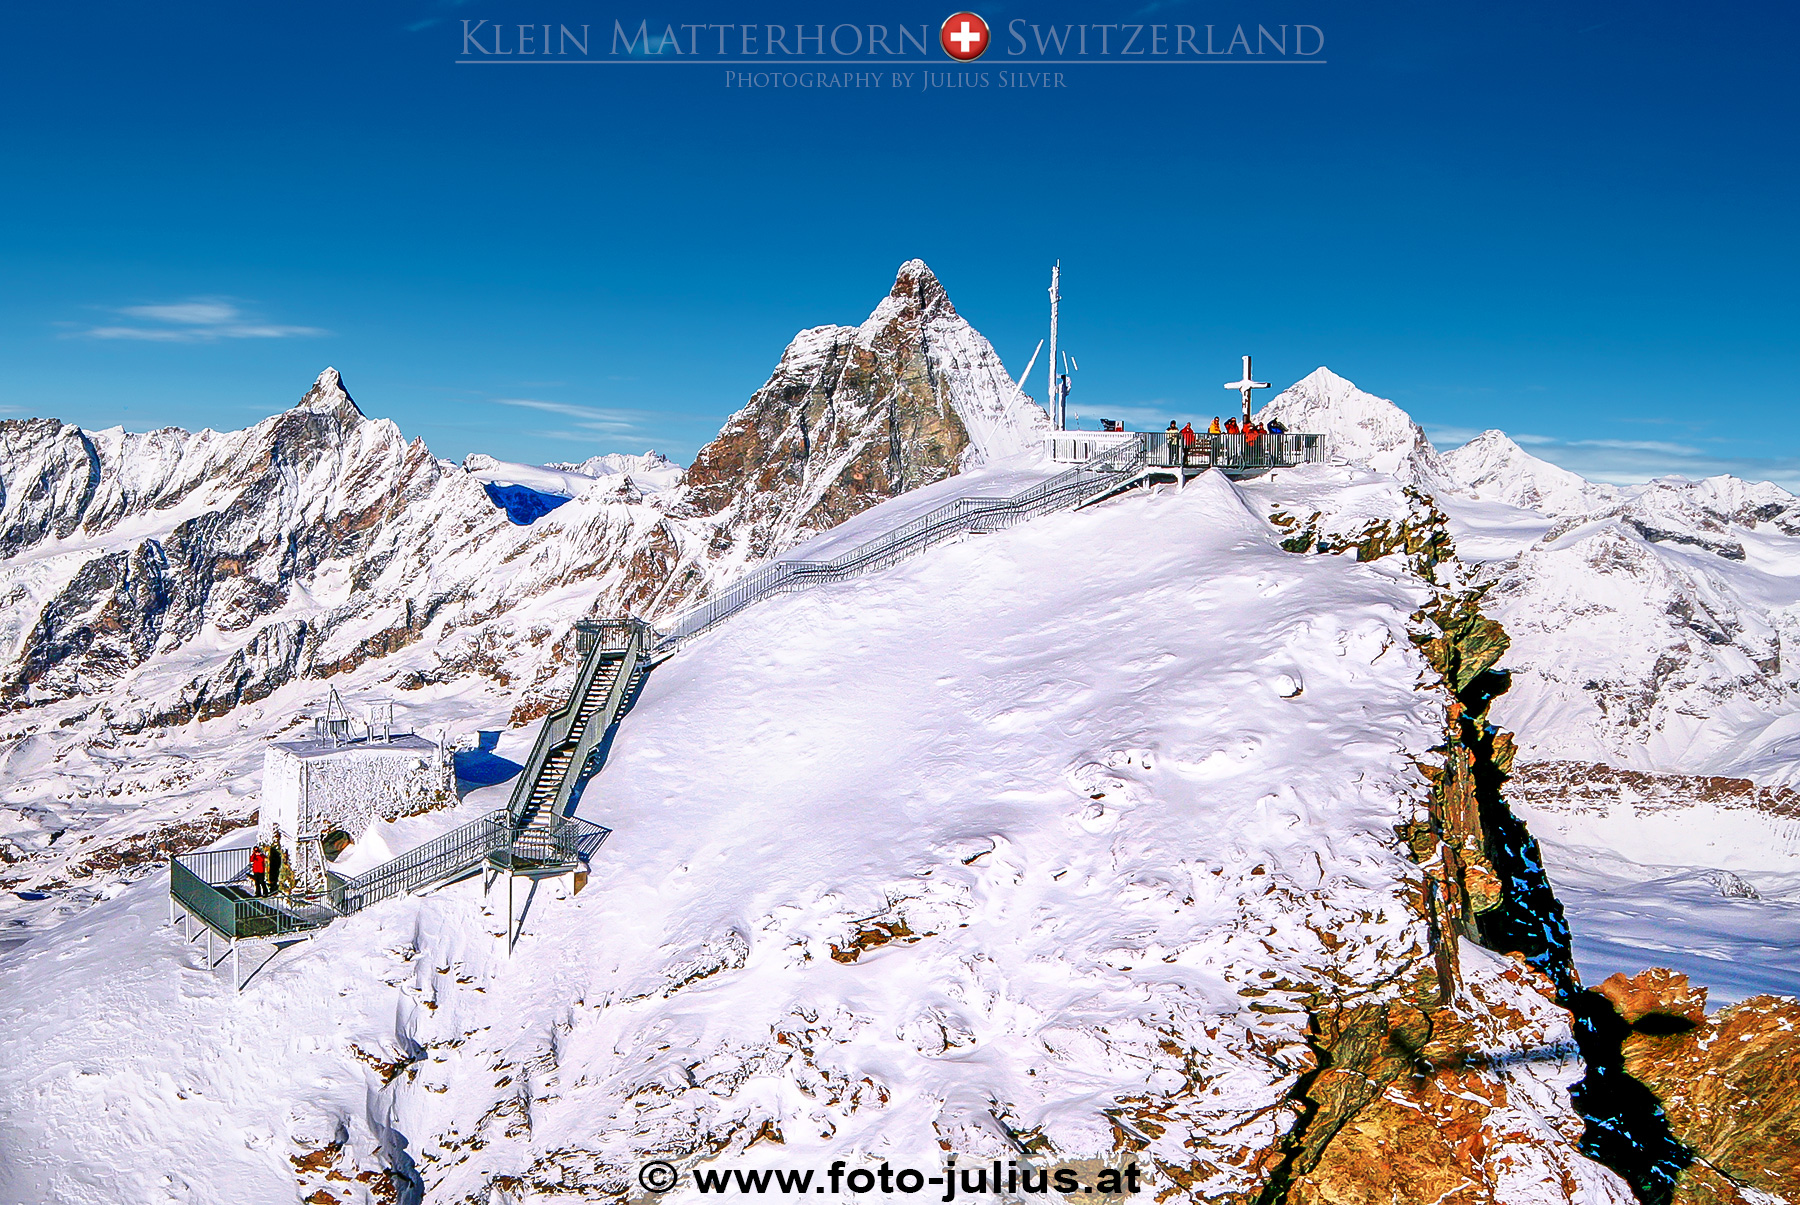 0635a_Klein_Matterhorn_Aerial_Photo.jpg, 1,2MB